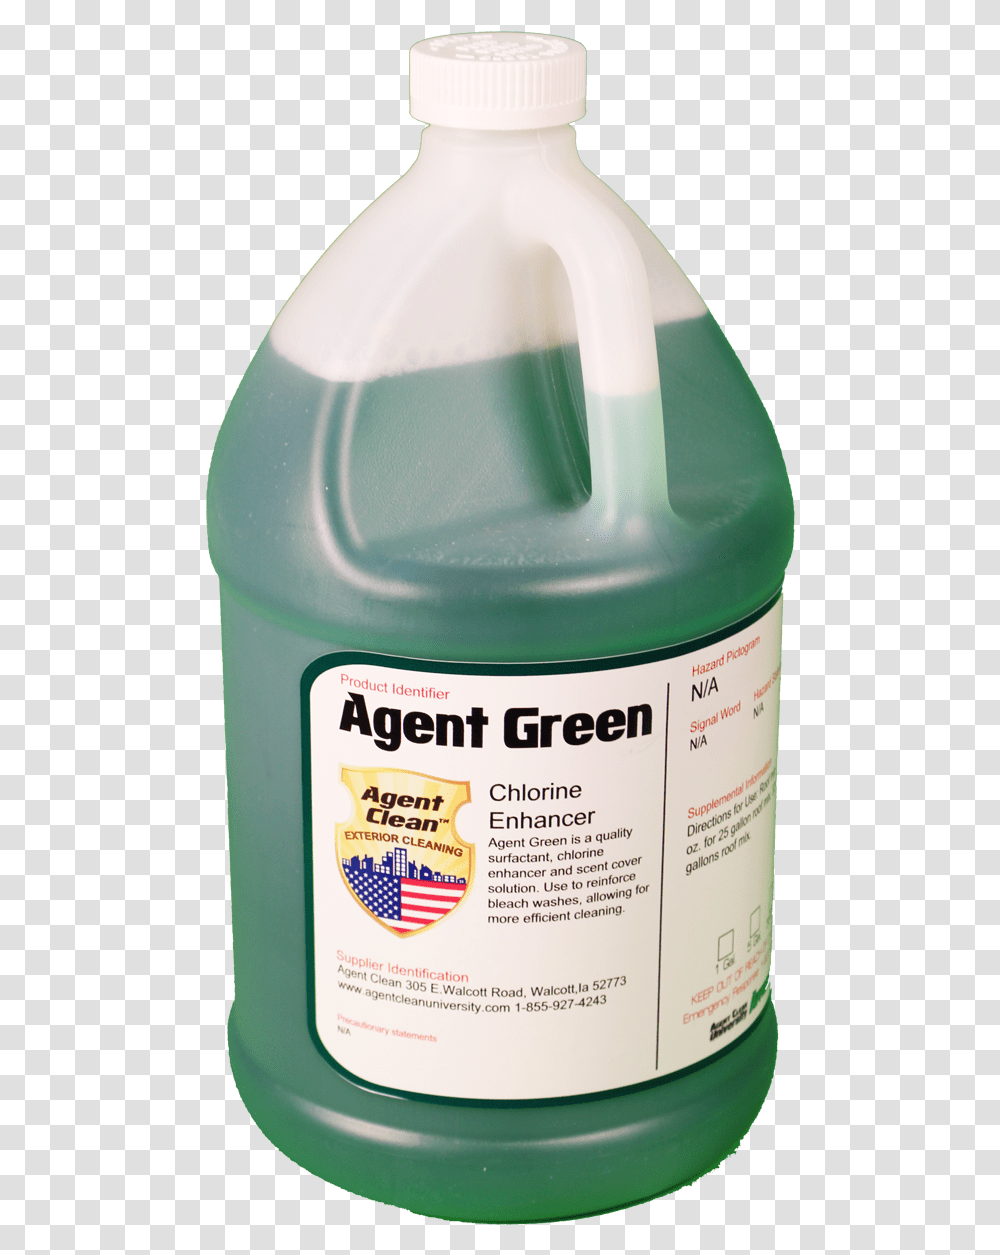 Agent Clean Agent Green Chlorine Enhancer Plastic, Milk, Beverage, Drink, Bottle Transparent Png